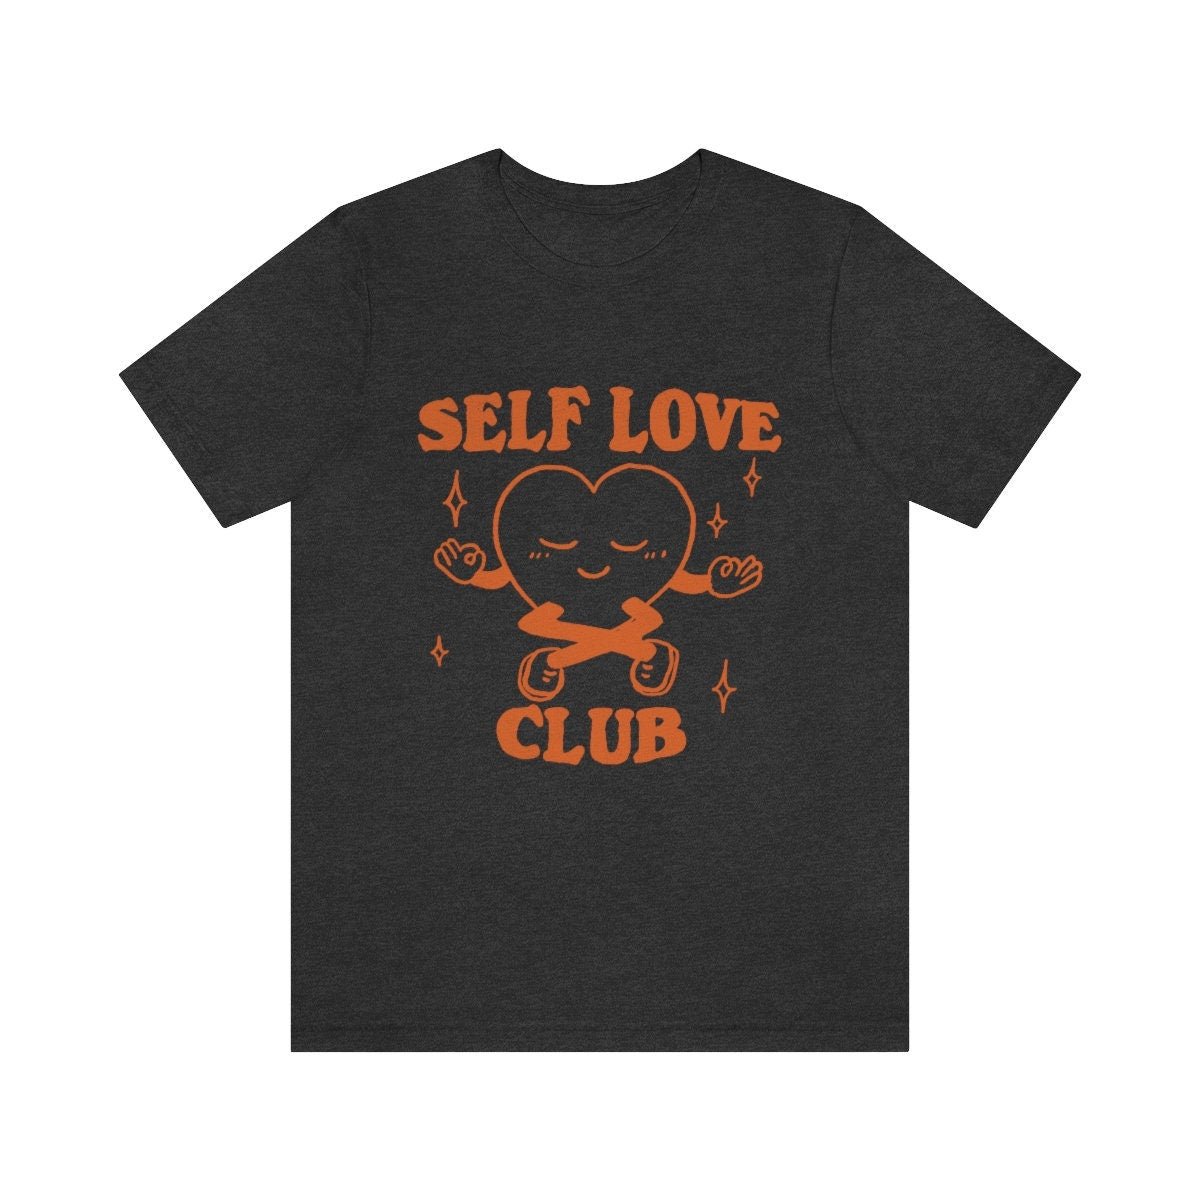 'Self Love Club' Trendy Tshirt - T-shirts - Kinder Planet Company